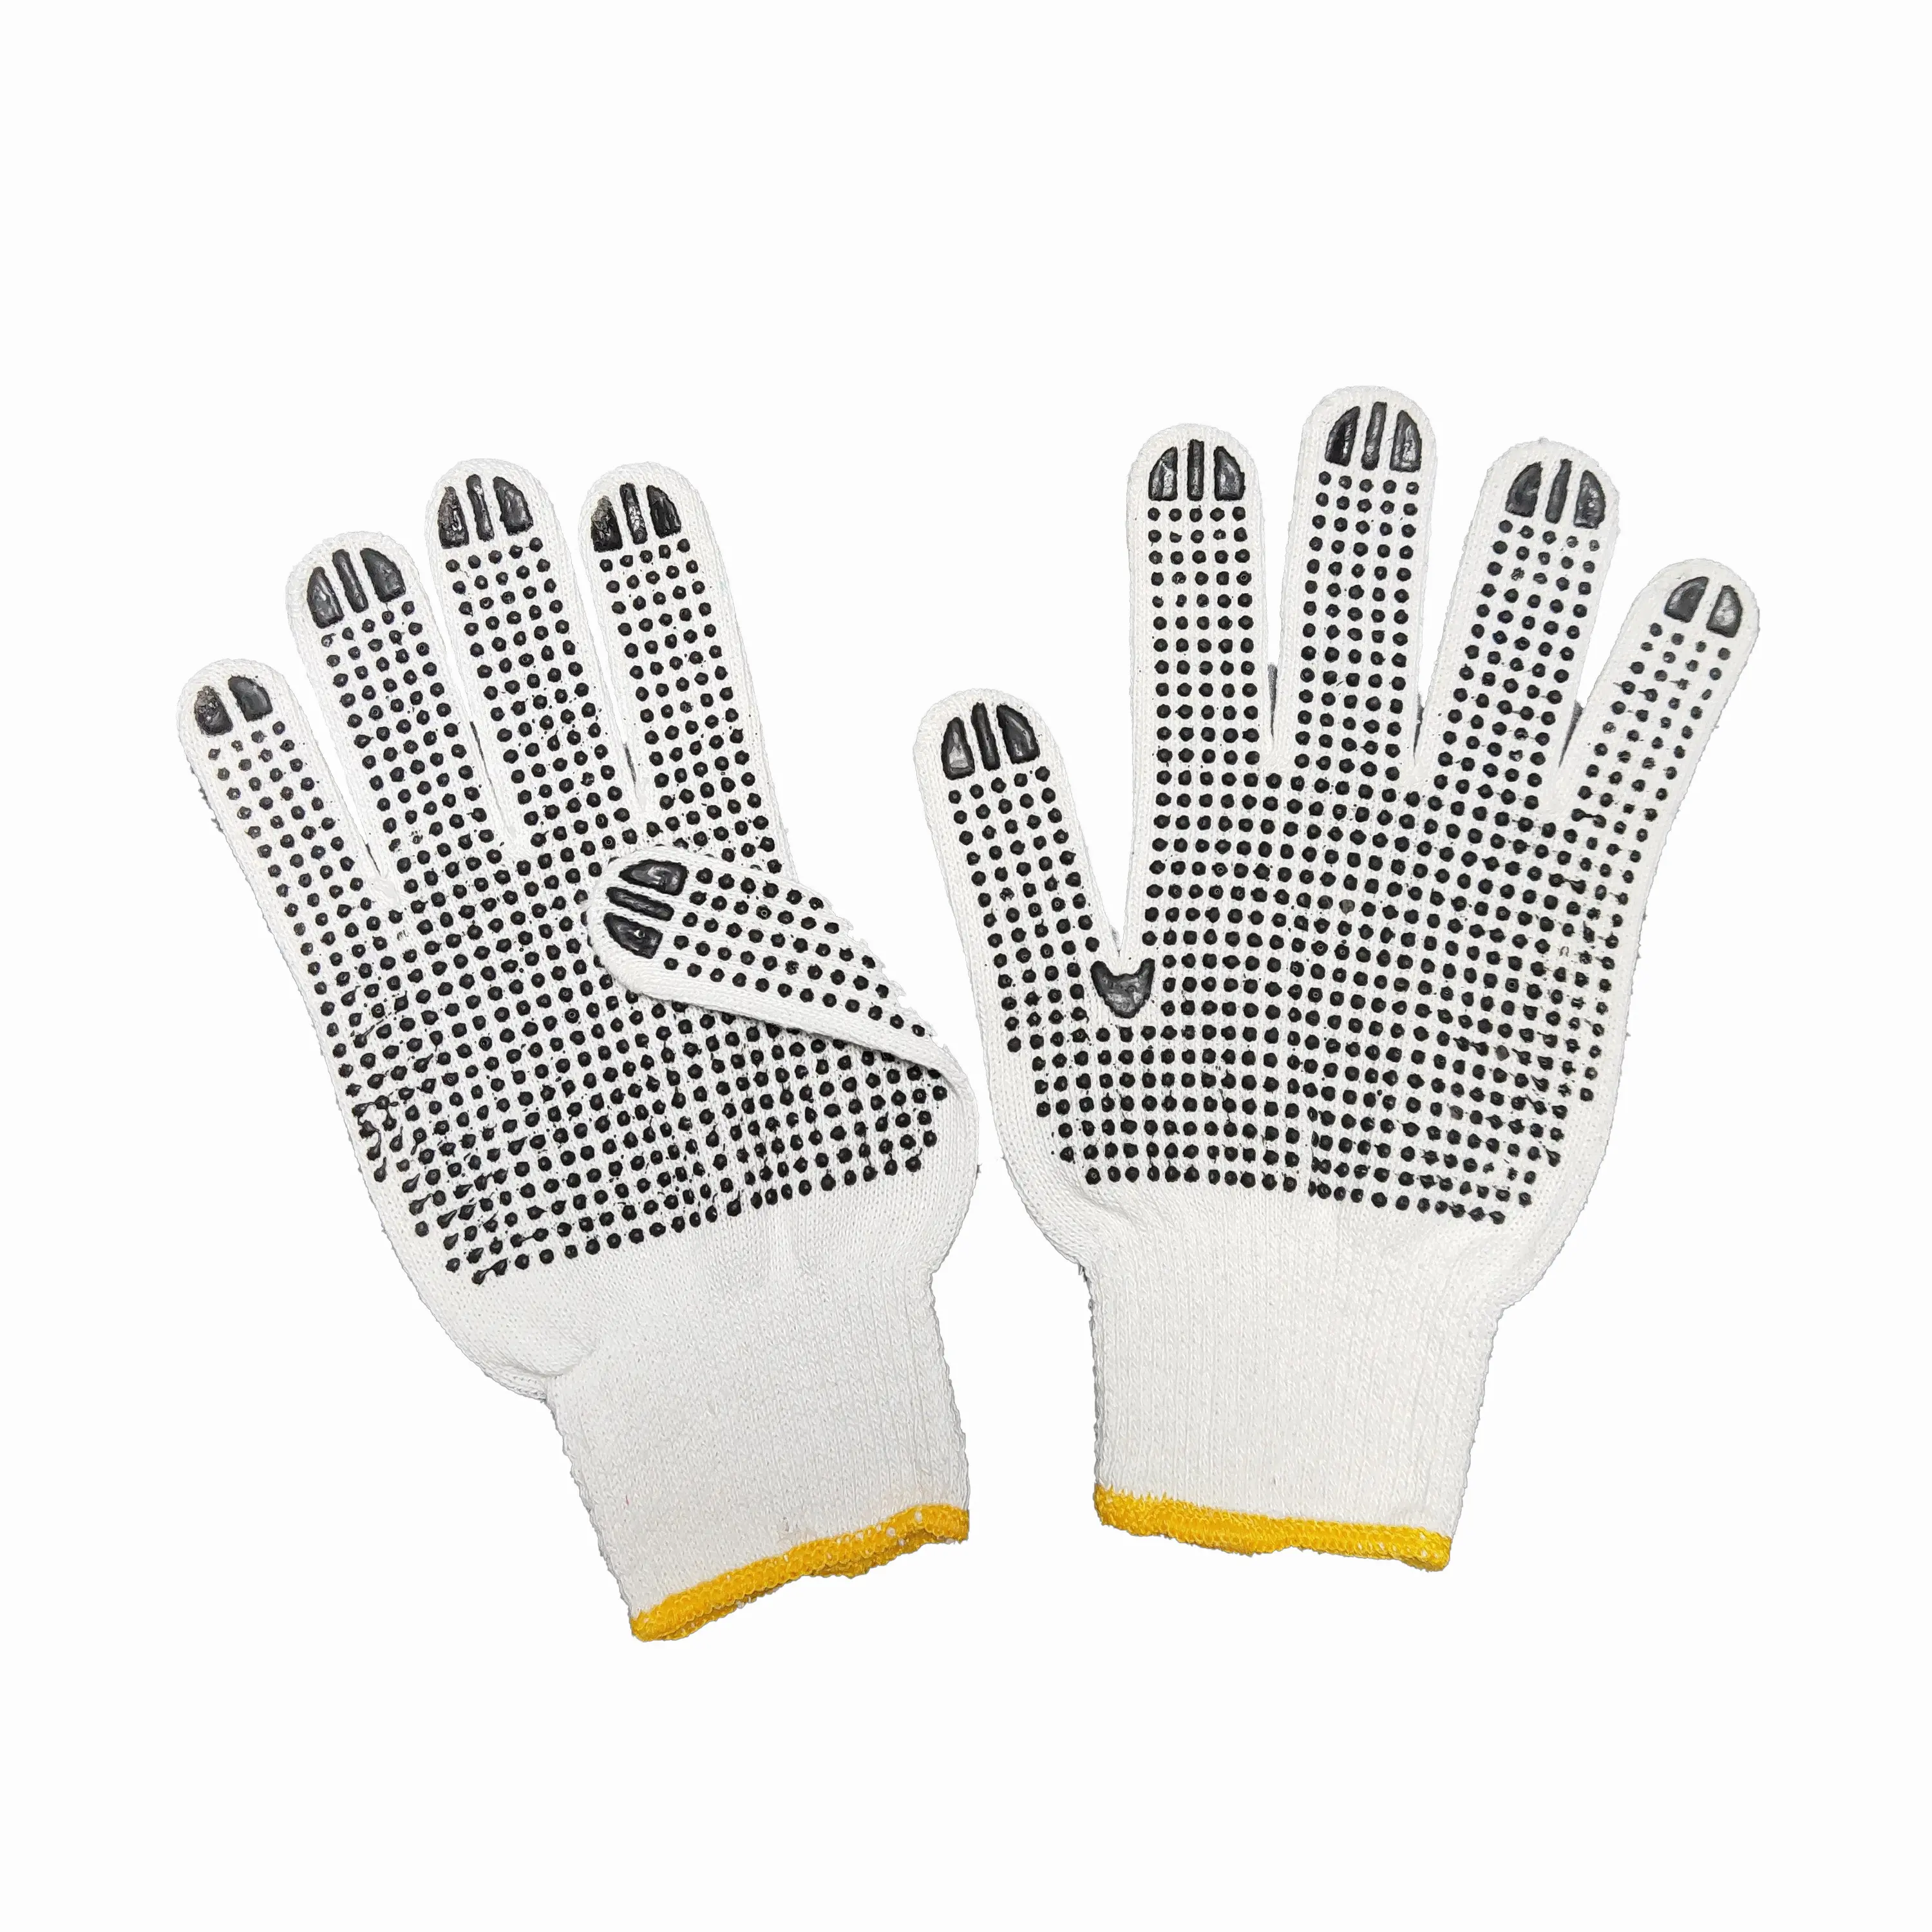 2021 Nieuw Uitgevonden Pvc Dot Korrel Volledige Palm Katoen Wit Mechanische Knit Veiligheid Werkhandschoenen